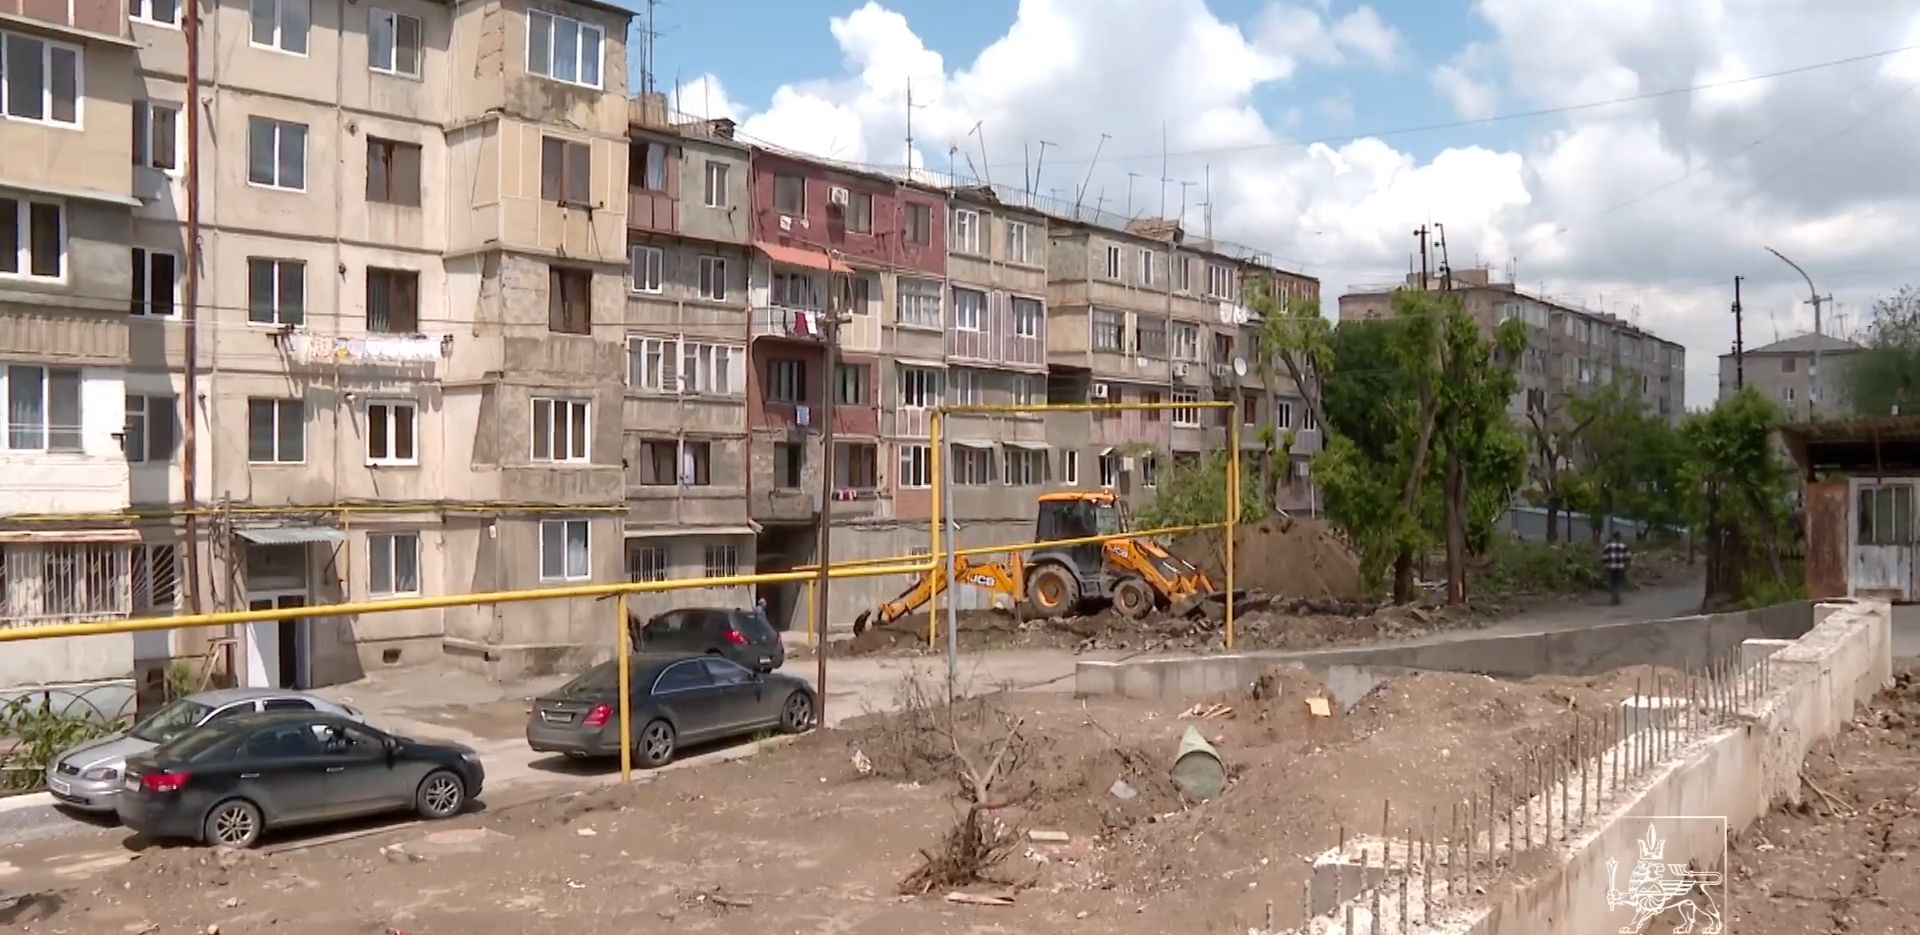 Շենգավիթ վարչական շրջանում մի շարք բնակելի շենքերի հարակից տարածքներ մաքրվել են ապօրինի շինություններից ու ցանկապատերից (տեսանյութ)